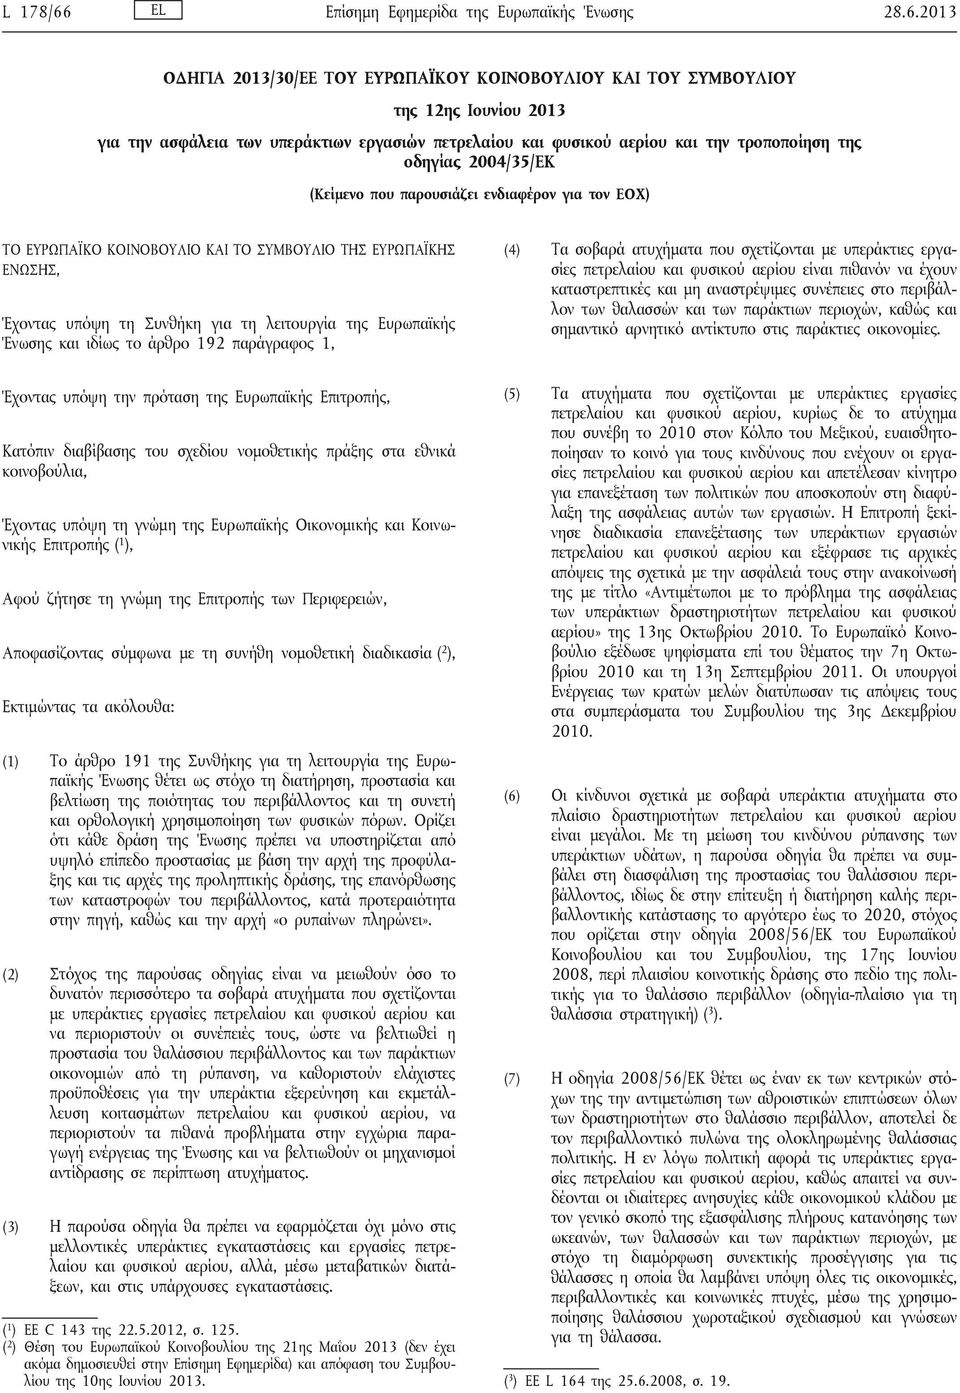 2013 ΟΔΗΓΙΑ 2013/30/ΕΕ ΤΟΥ ΕΥΡΩΠΑΪΚΟΥ ΚΟΙΝΟΒΟΥΛΙΟΥ ΚΑΙ ΤΟΥ ΣΥΜΒΟΥΛΙΟΥ της 12ης Ιουνίου 2013 για την ασφάλεια των υπεράκτιων εργασιών πετρελαίου και φυσικού αερίου και την τροποποίηση της οδηγίας